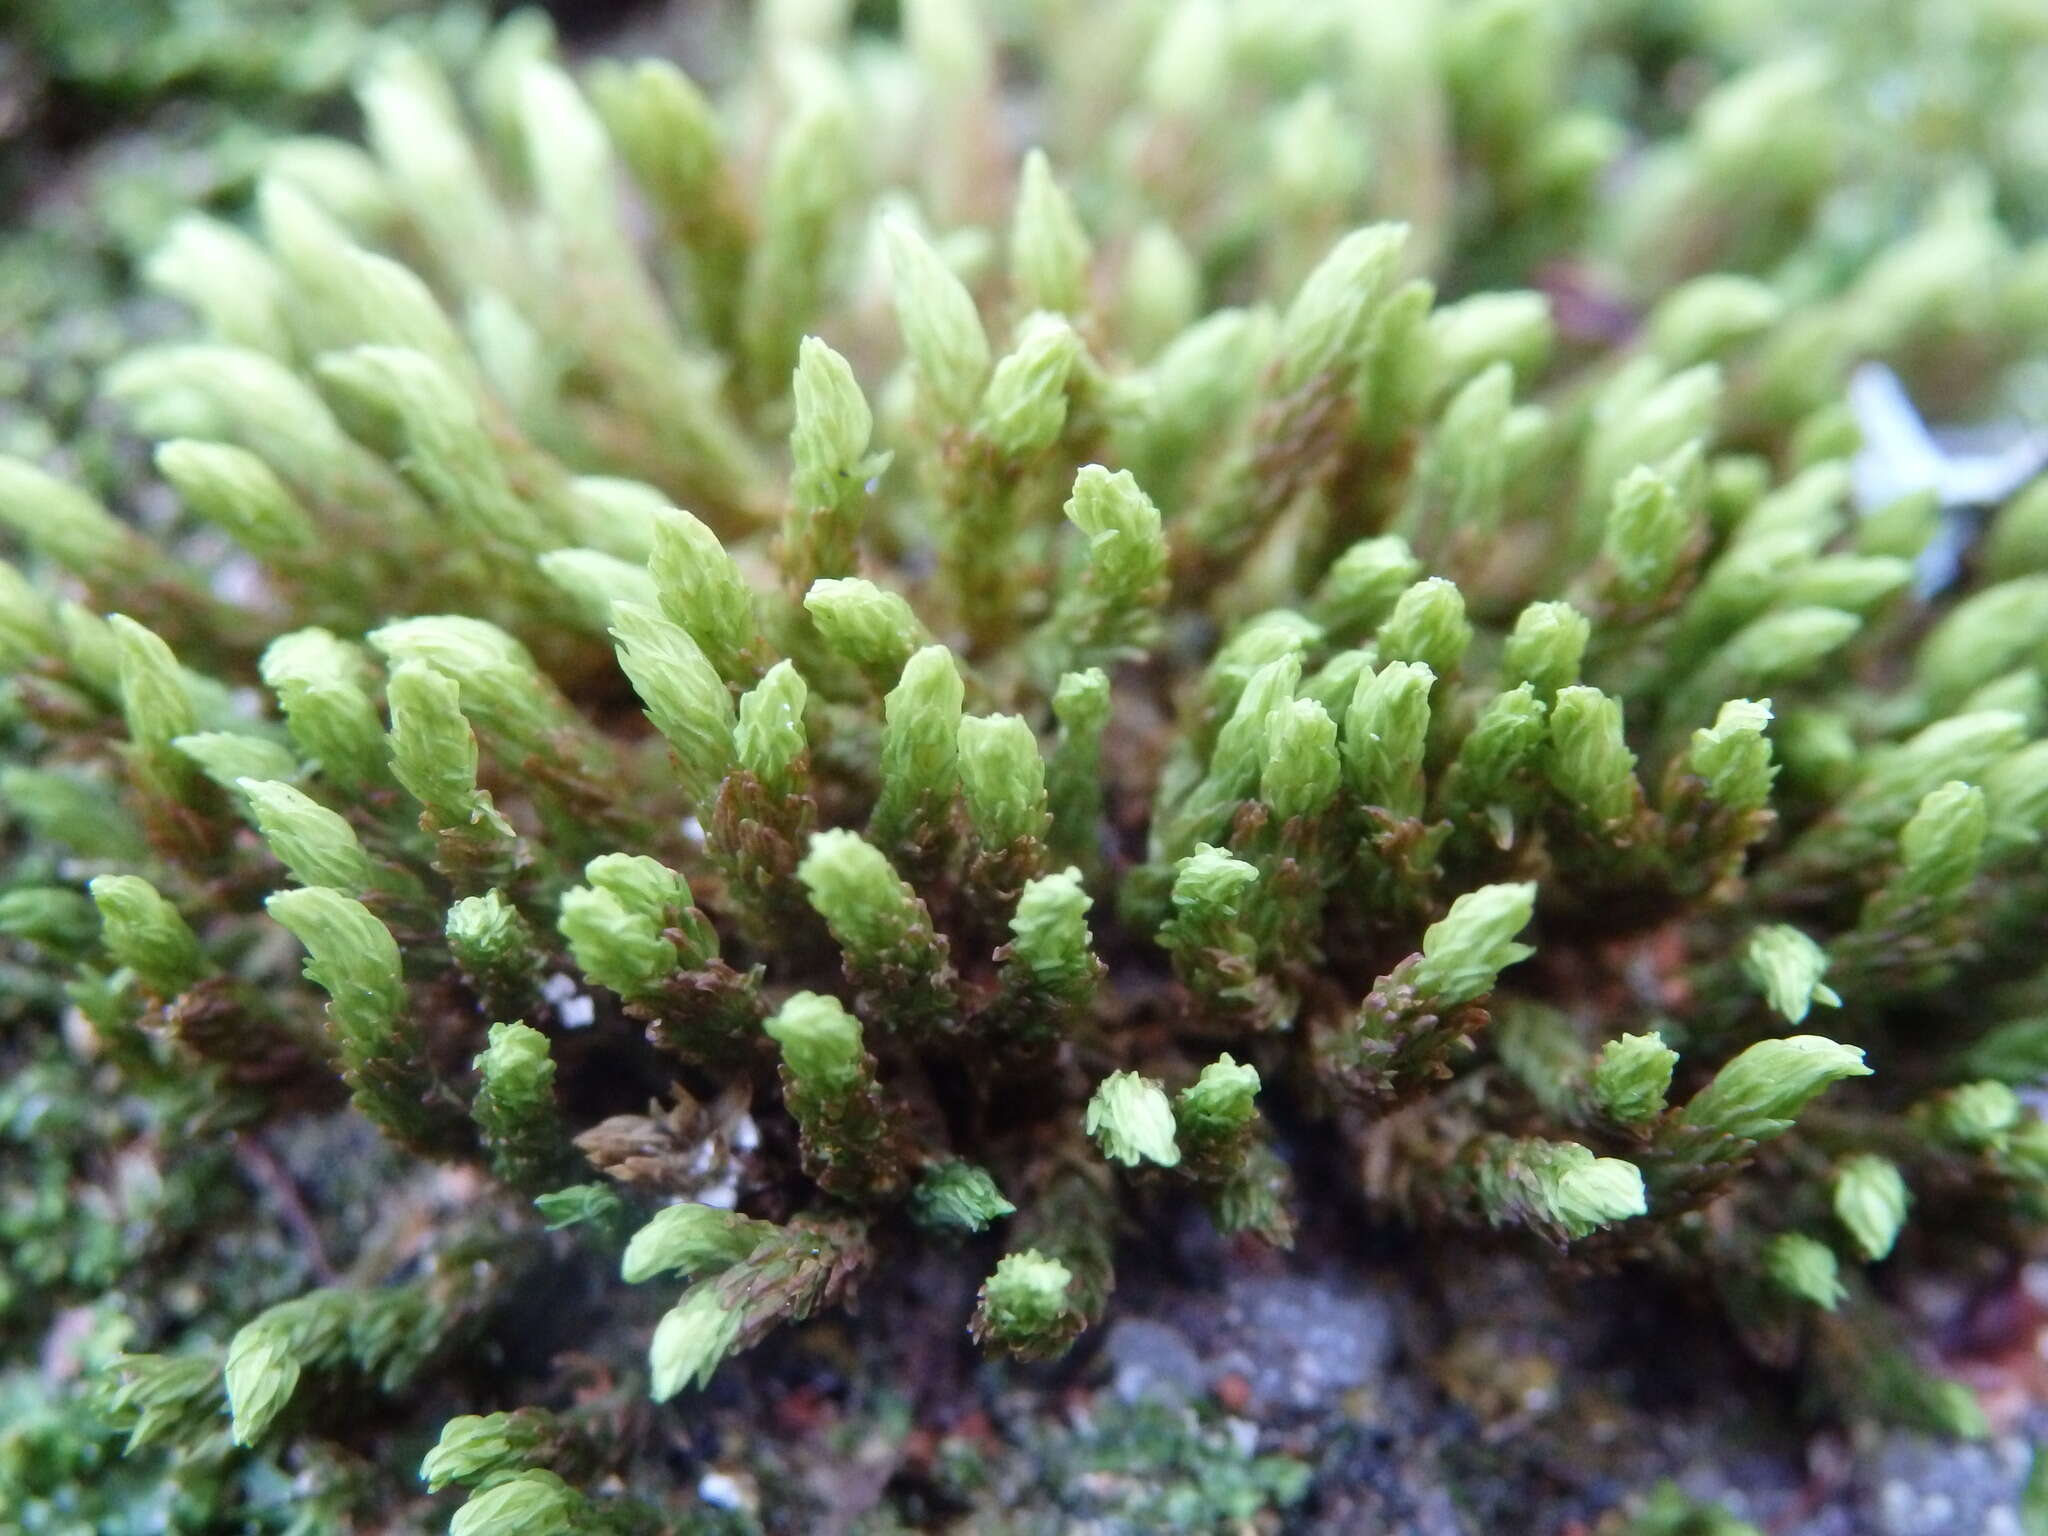 Image of aquatic racomitrium moss